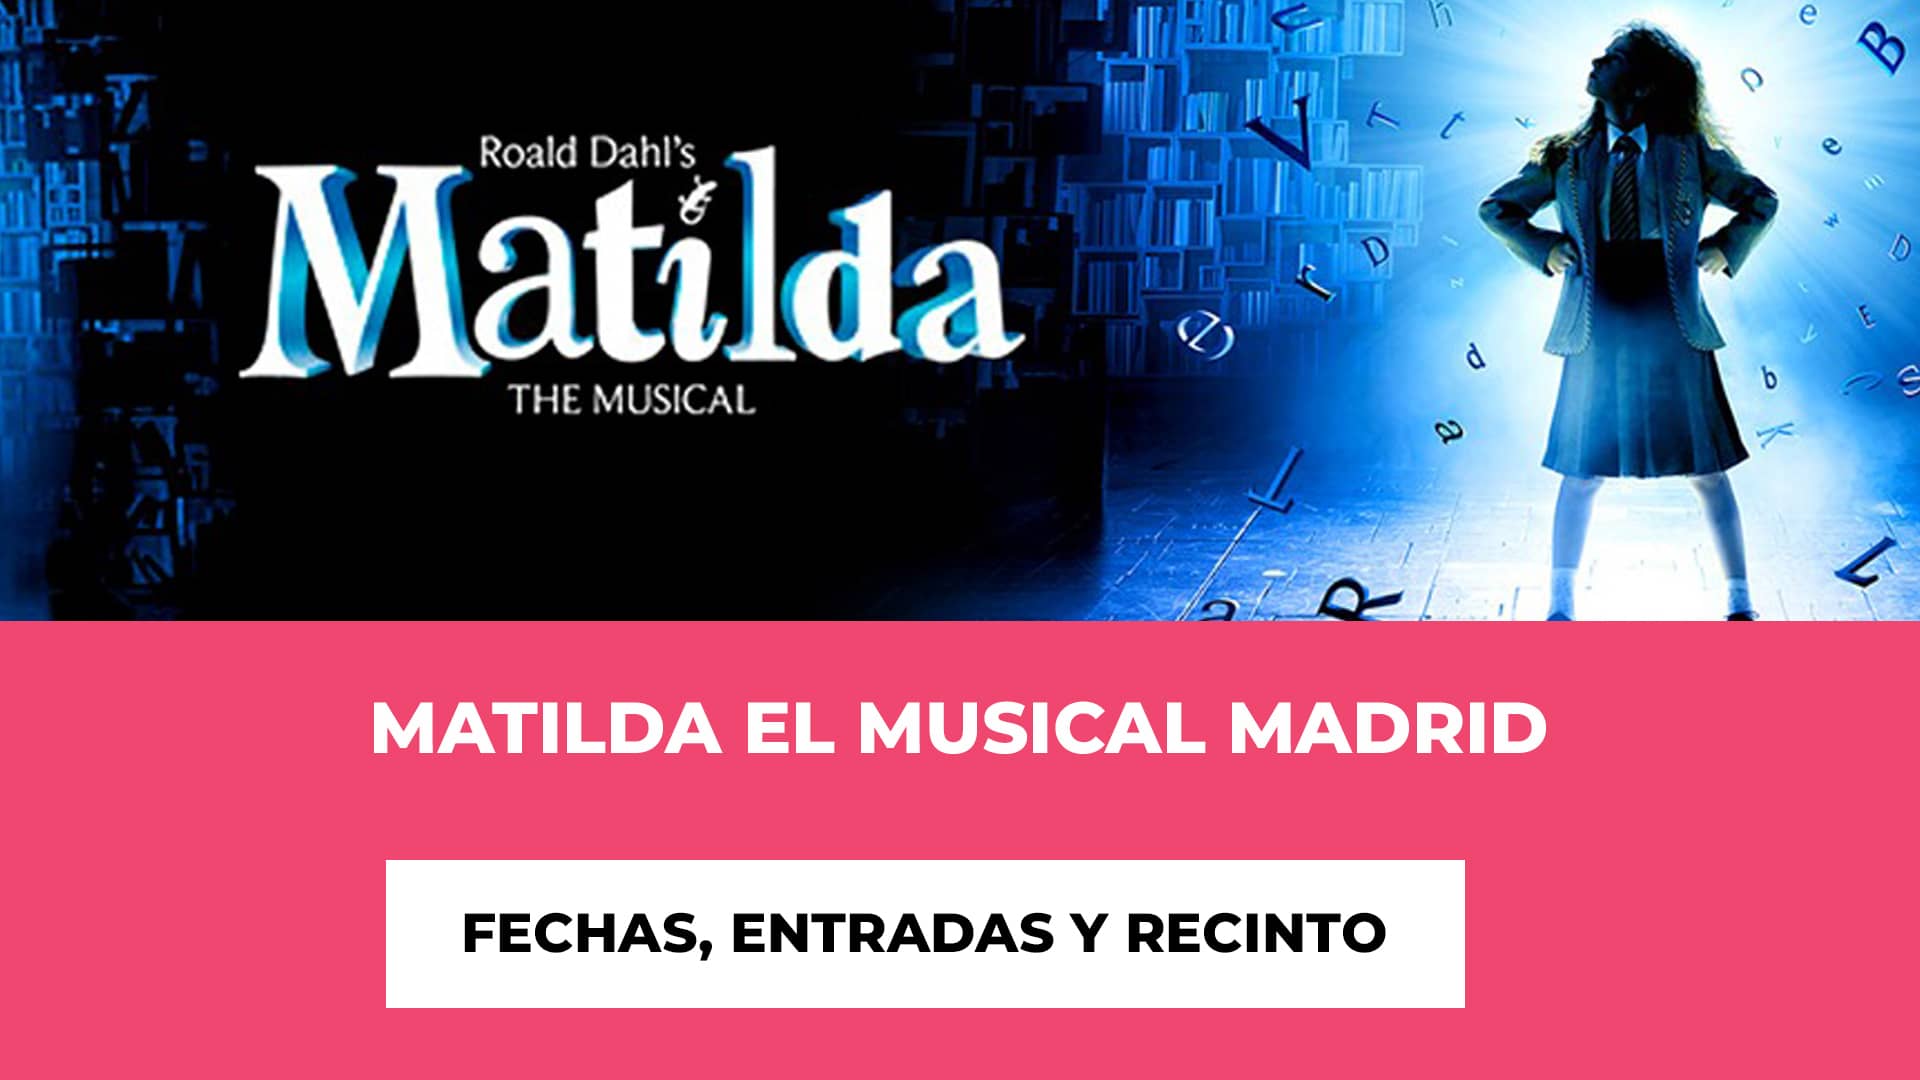 Matilda El Musical Madrid Entradas - Trayectoria - Premios - Experiencia mágica - Superproducción - Precios de las entradas